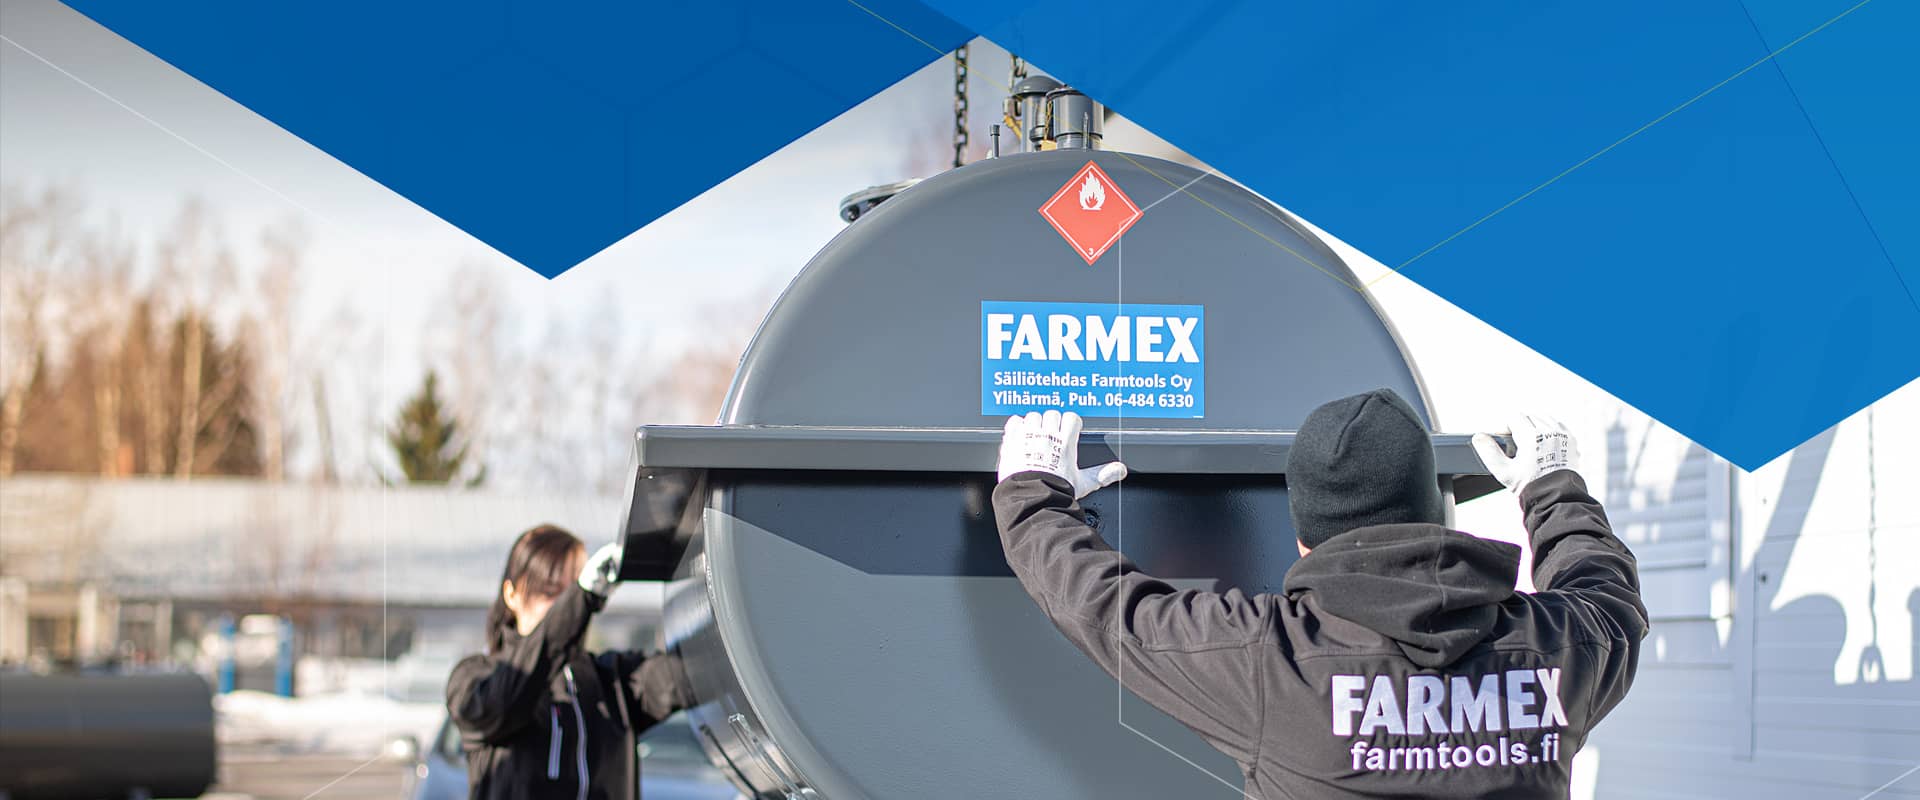 FARMEX 100A, 10 000L valuma-altaallinen polttoöljysäiliö  -rajoitettu saatavuus 